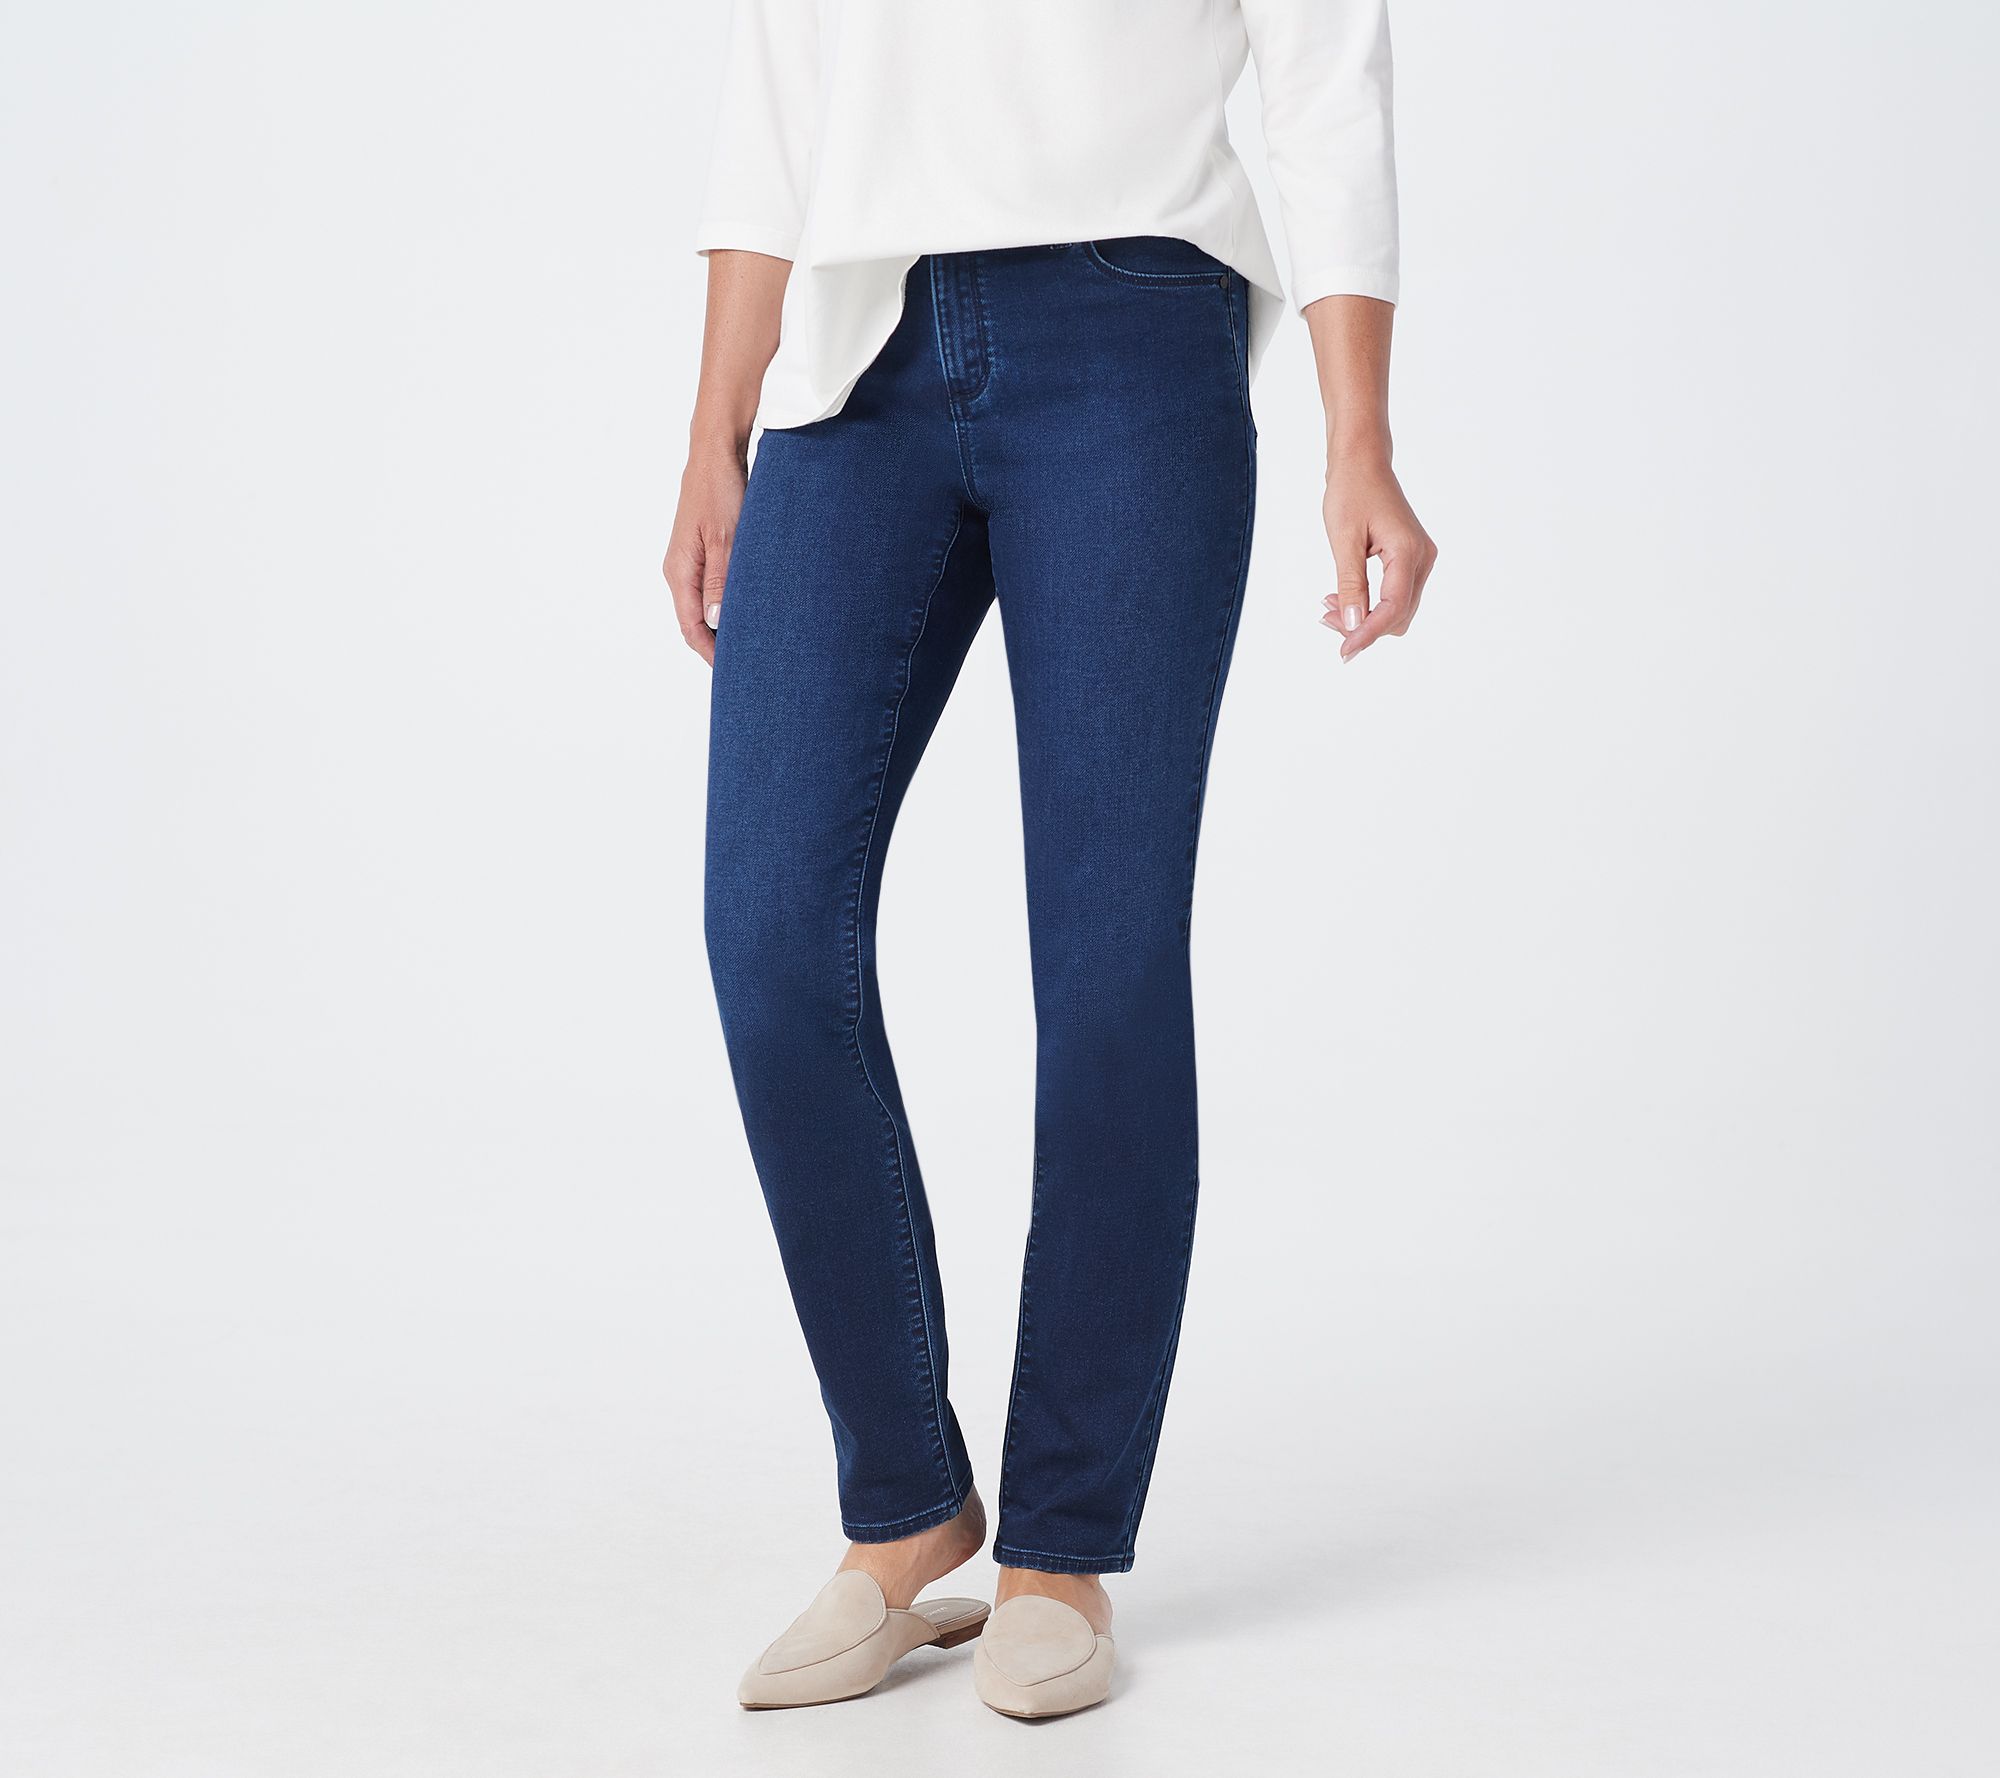 GRAVER Susan Graver Petite Knit Denim Zip-Front Jeans - QVC.com